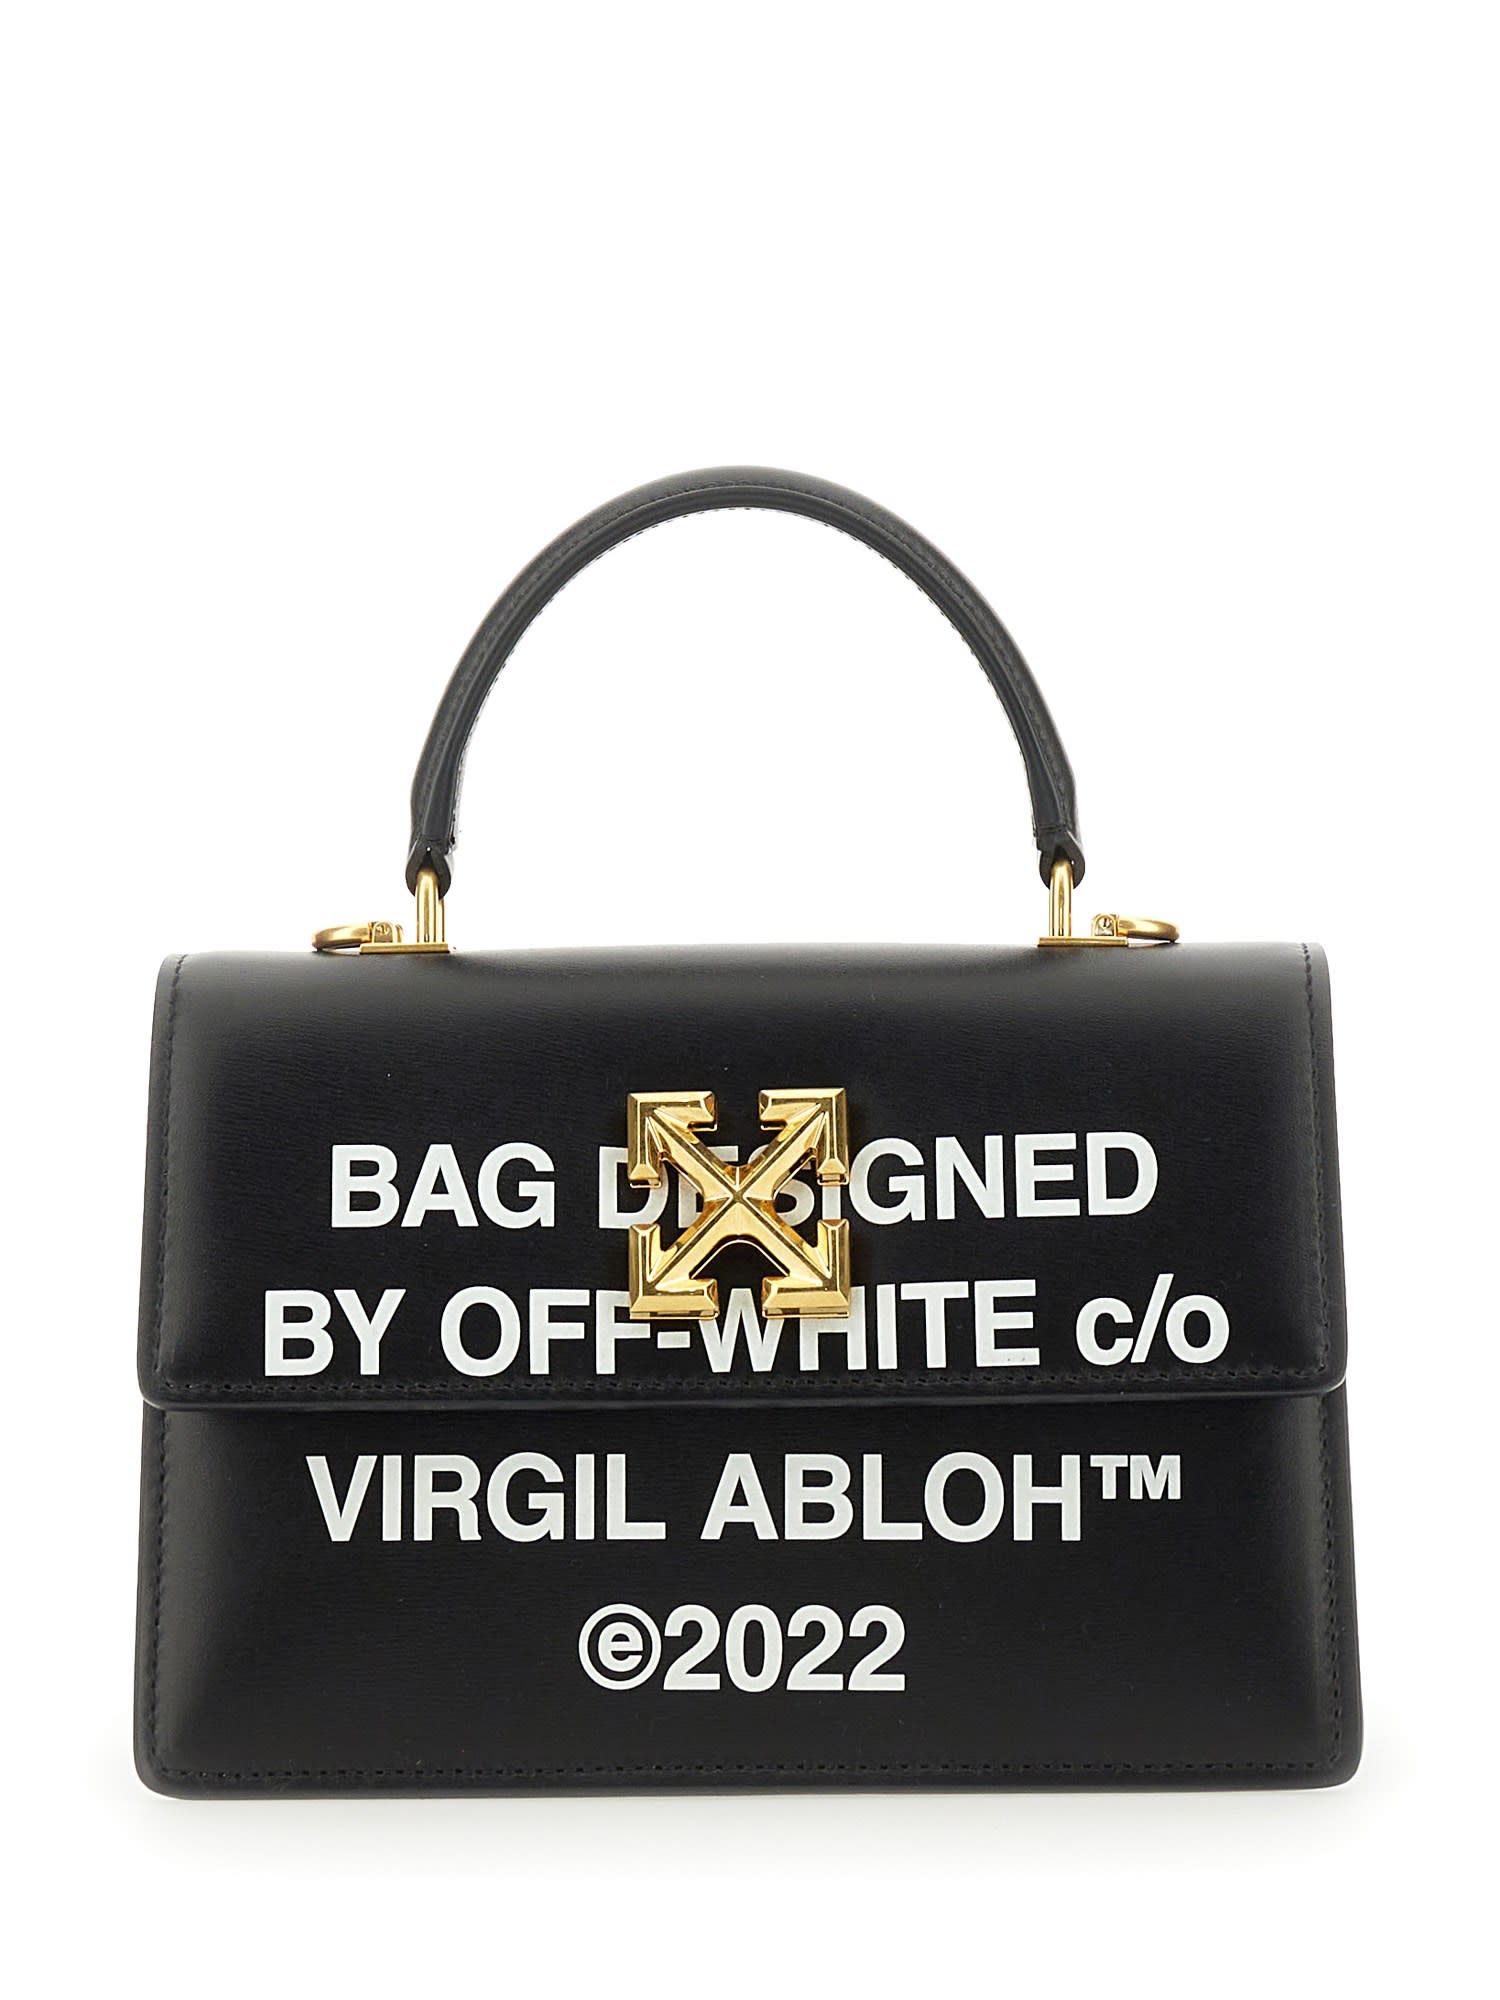 Off-White c/o Virgil Abloh Handbag Jitney Turn To Open 1.4 In Black  Calfskin